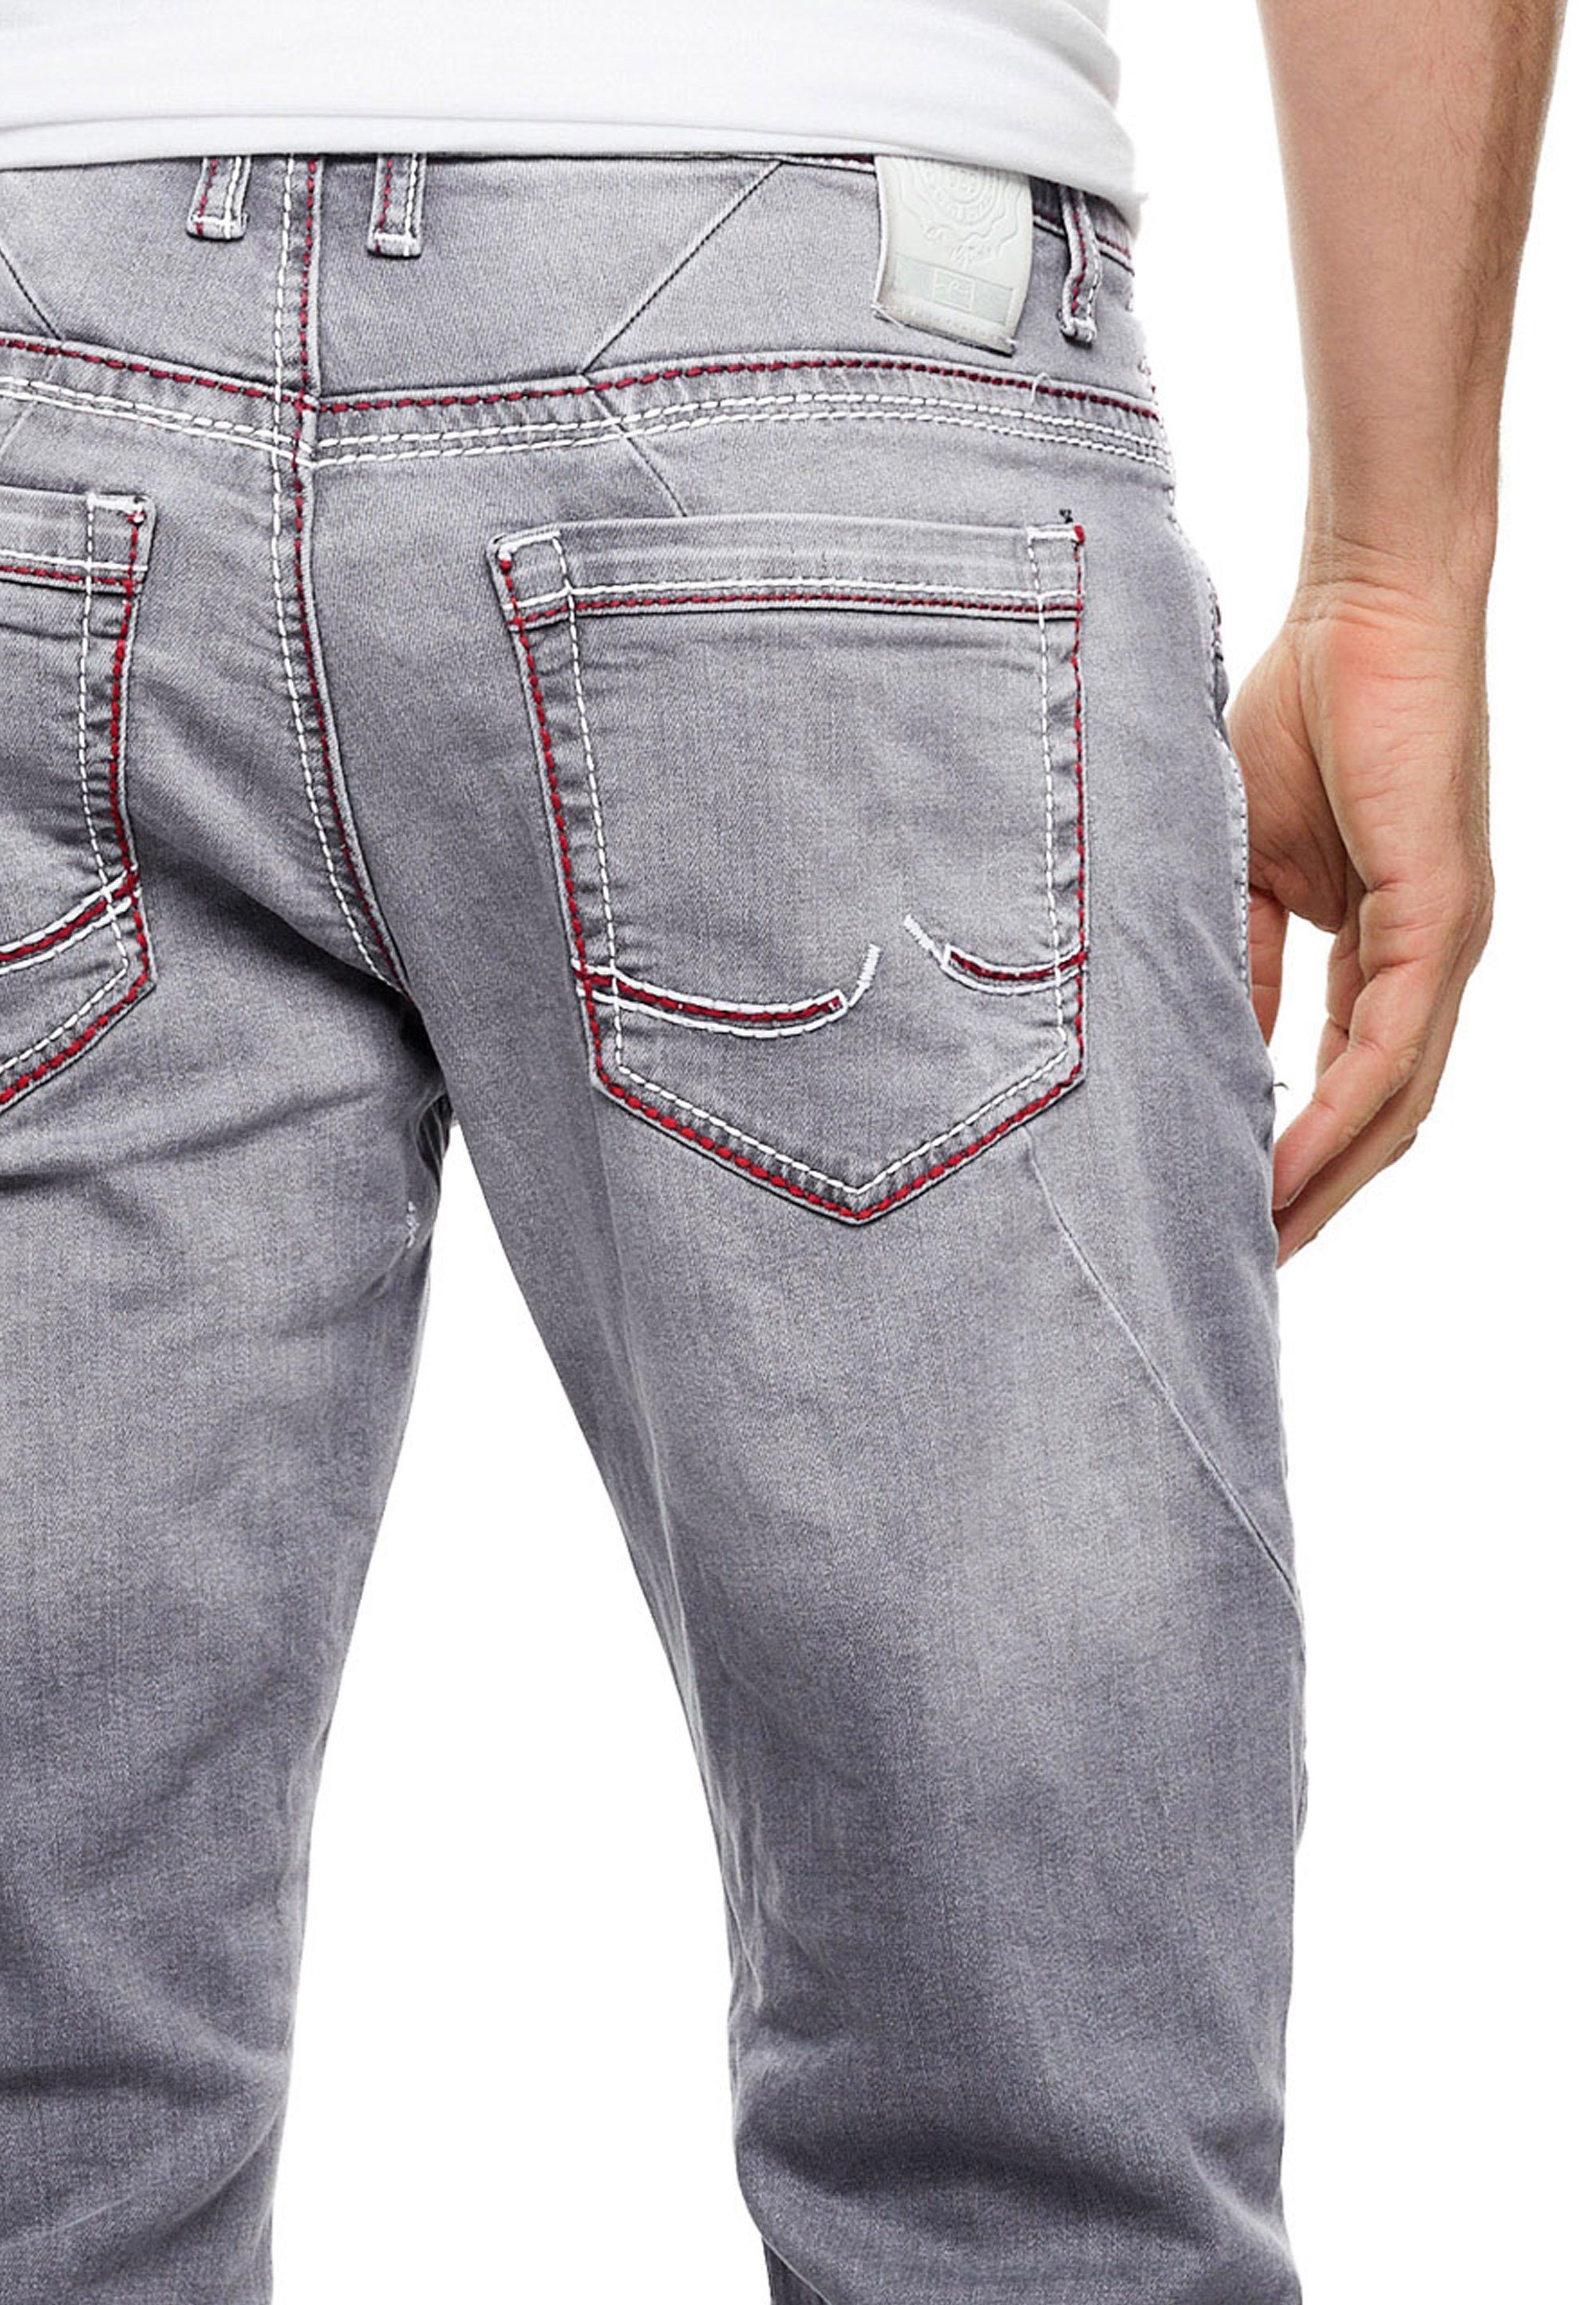 Rusty Neal Straight-Jeans grau Ziernähten Mit ODAR abgesetzten farblich